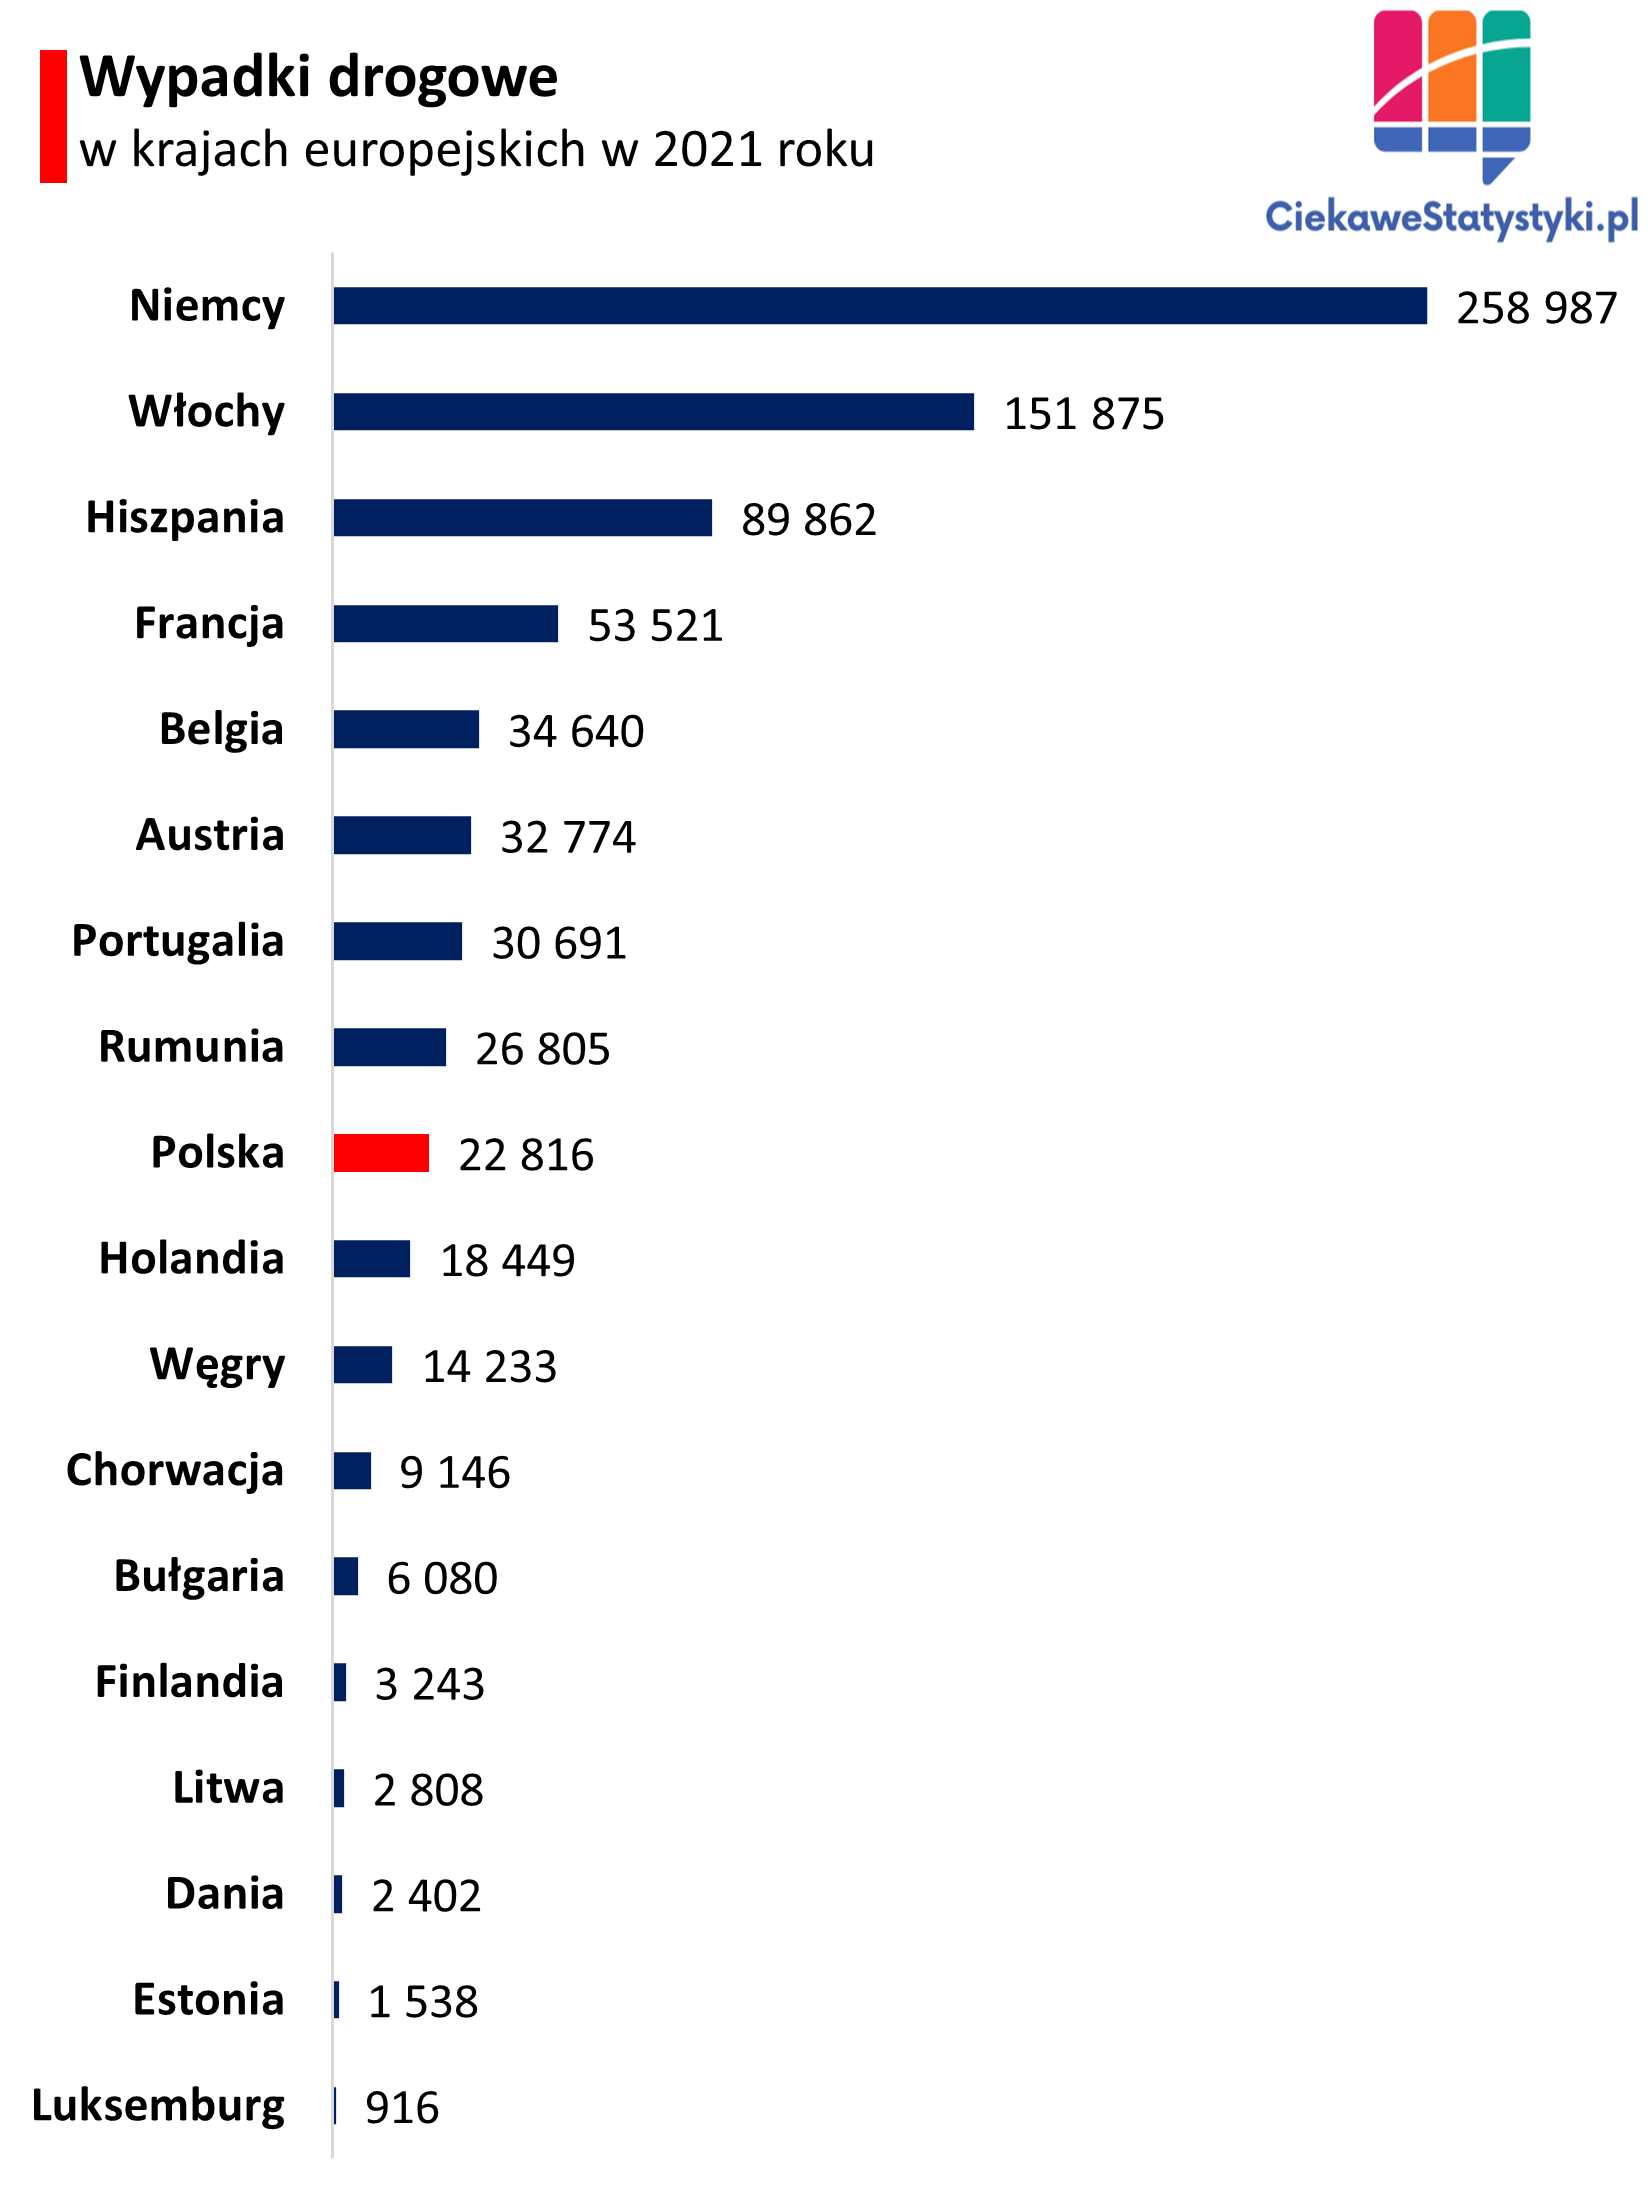 Ranking wypadków drogowych w państwach Europy